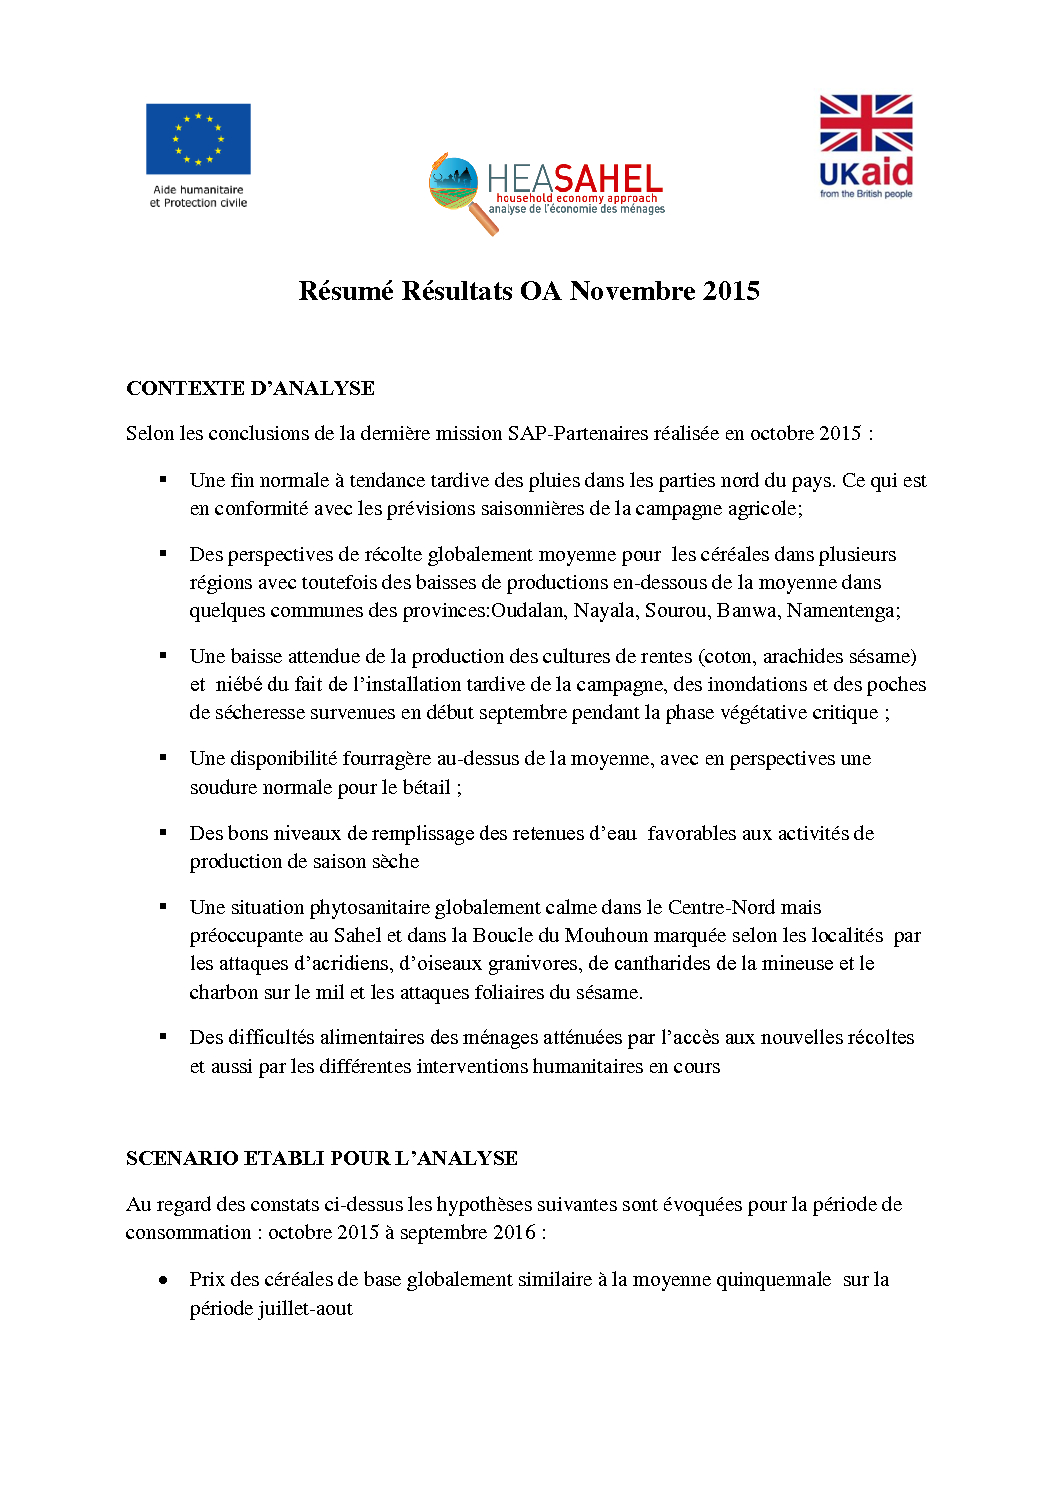 Présentation des résultats OA - Burkina Faso - Novembre 2015